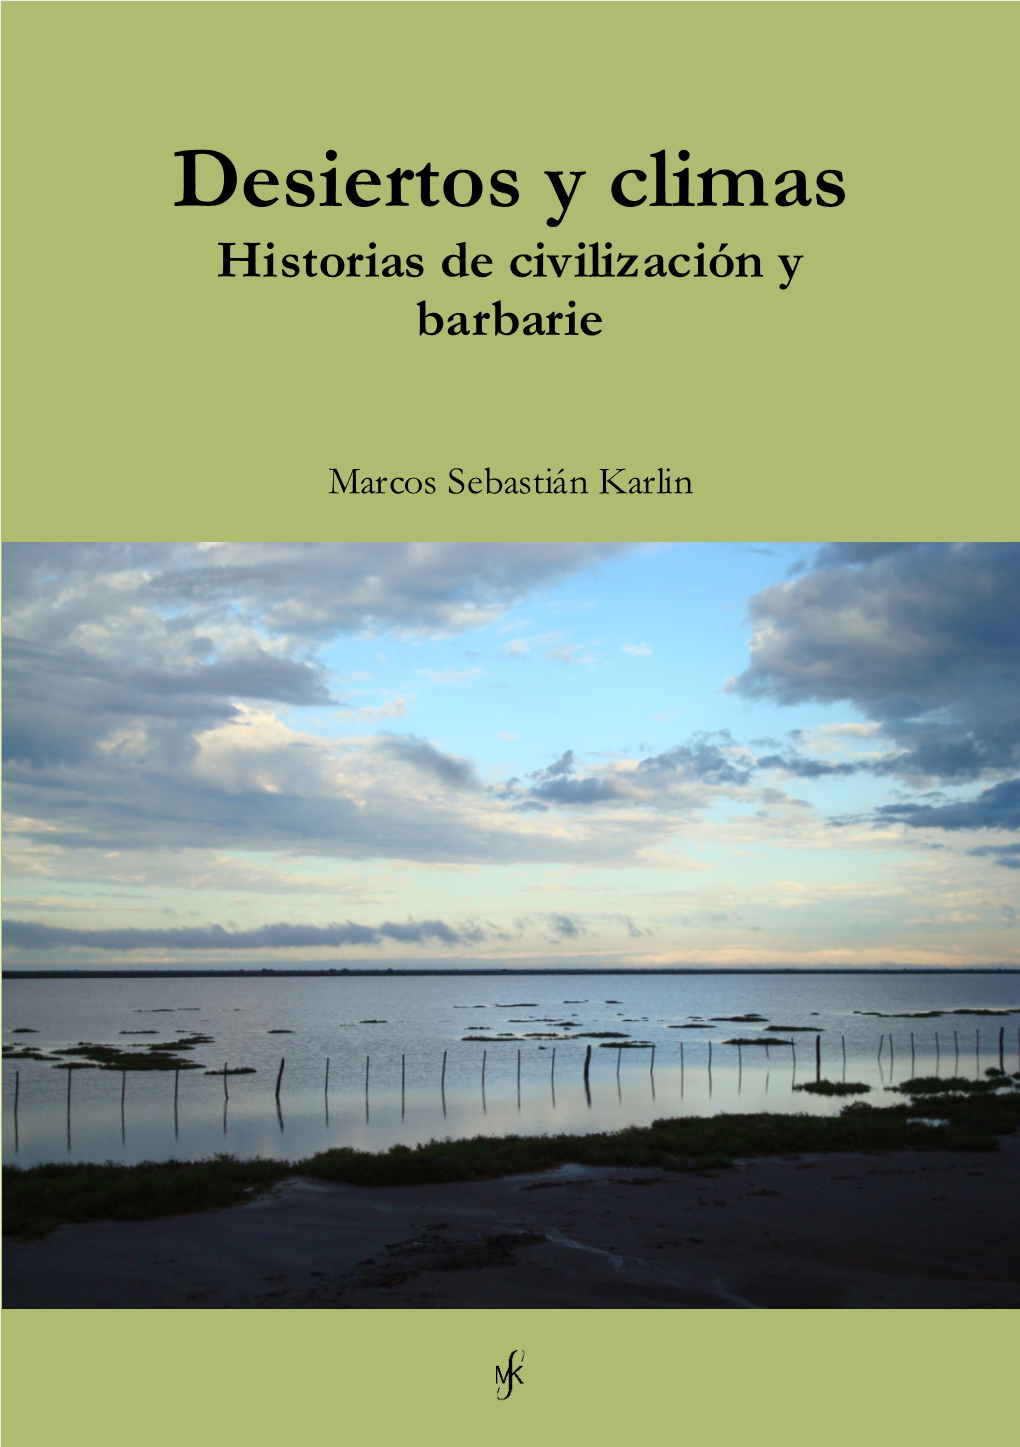 Karlin, Marcos. Desiertos Y Climas, Historias De